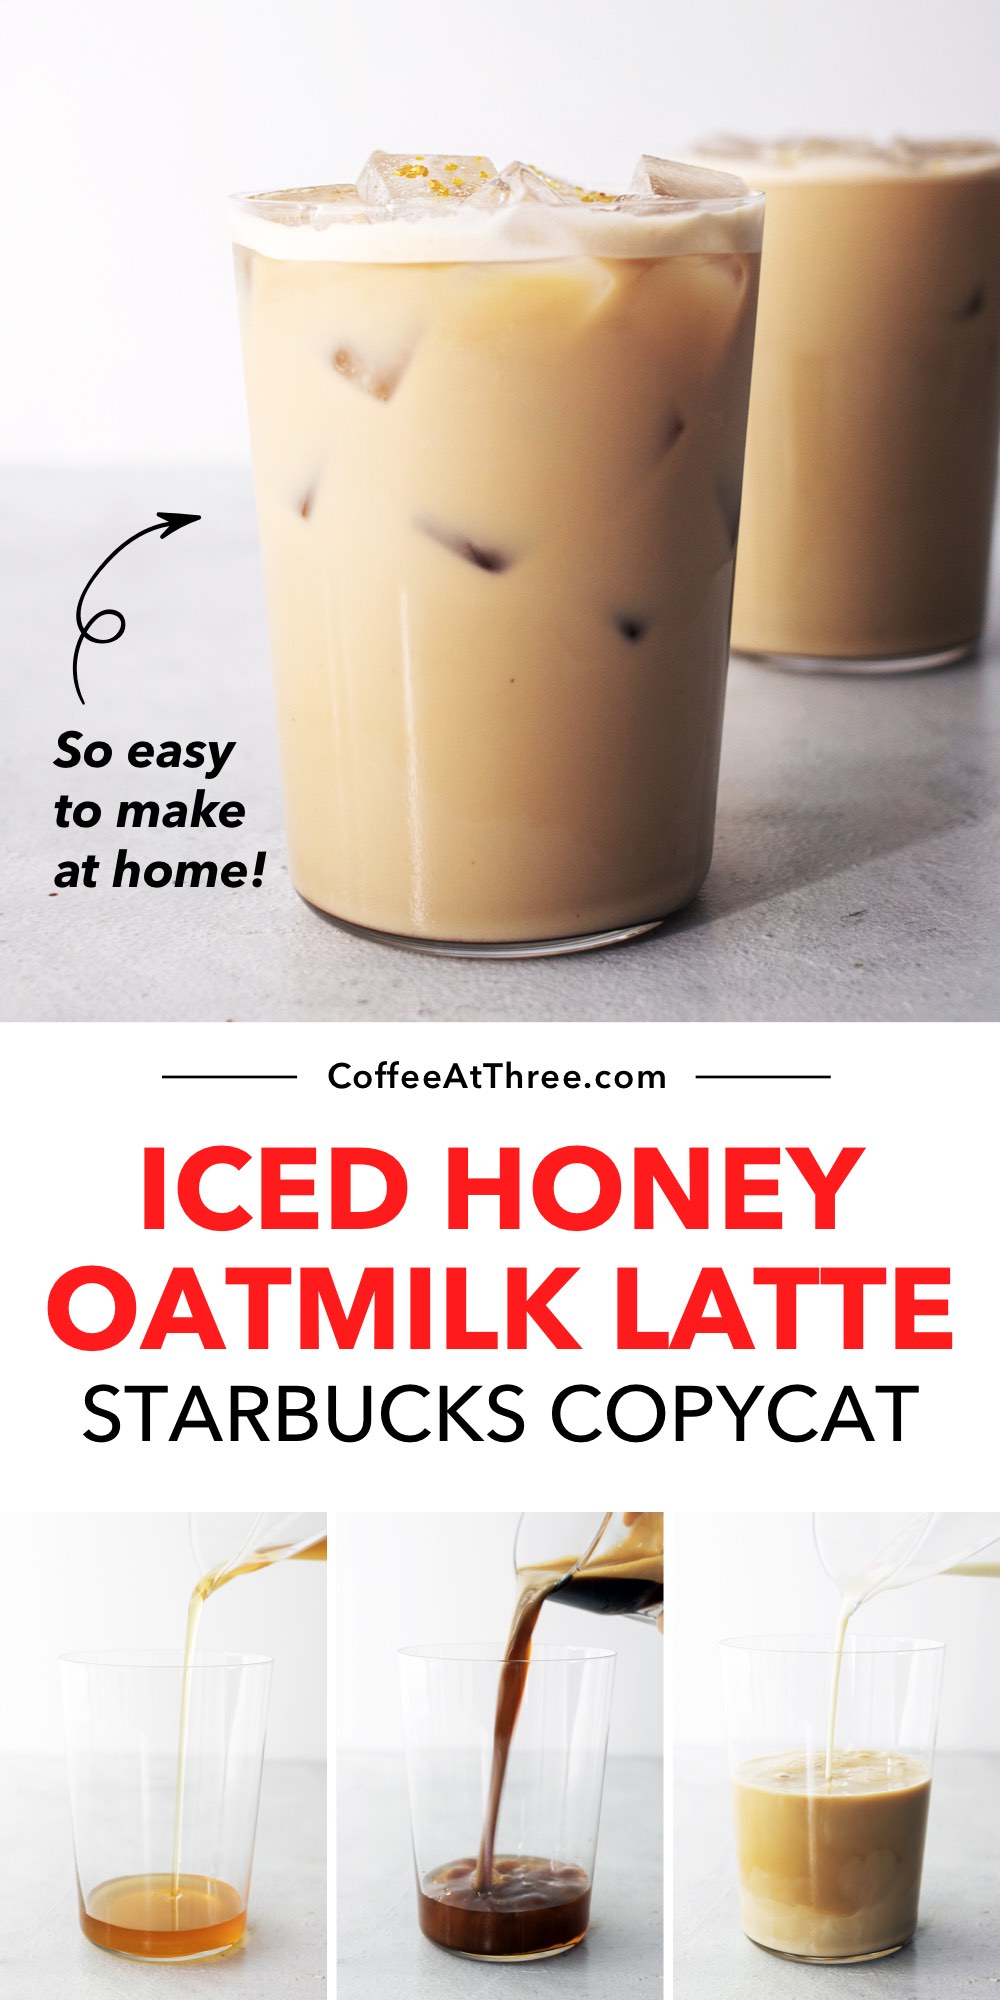 Starbucks Iced Honey Havermelk Latte Copycat